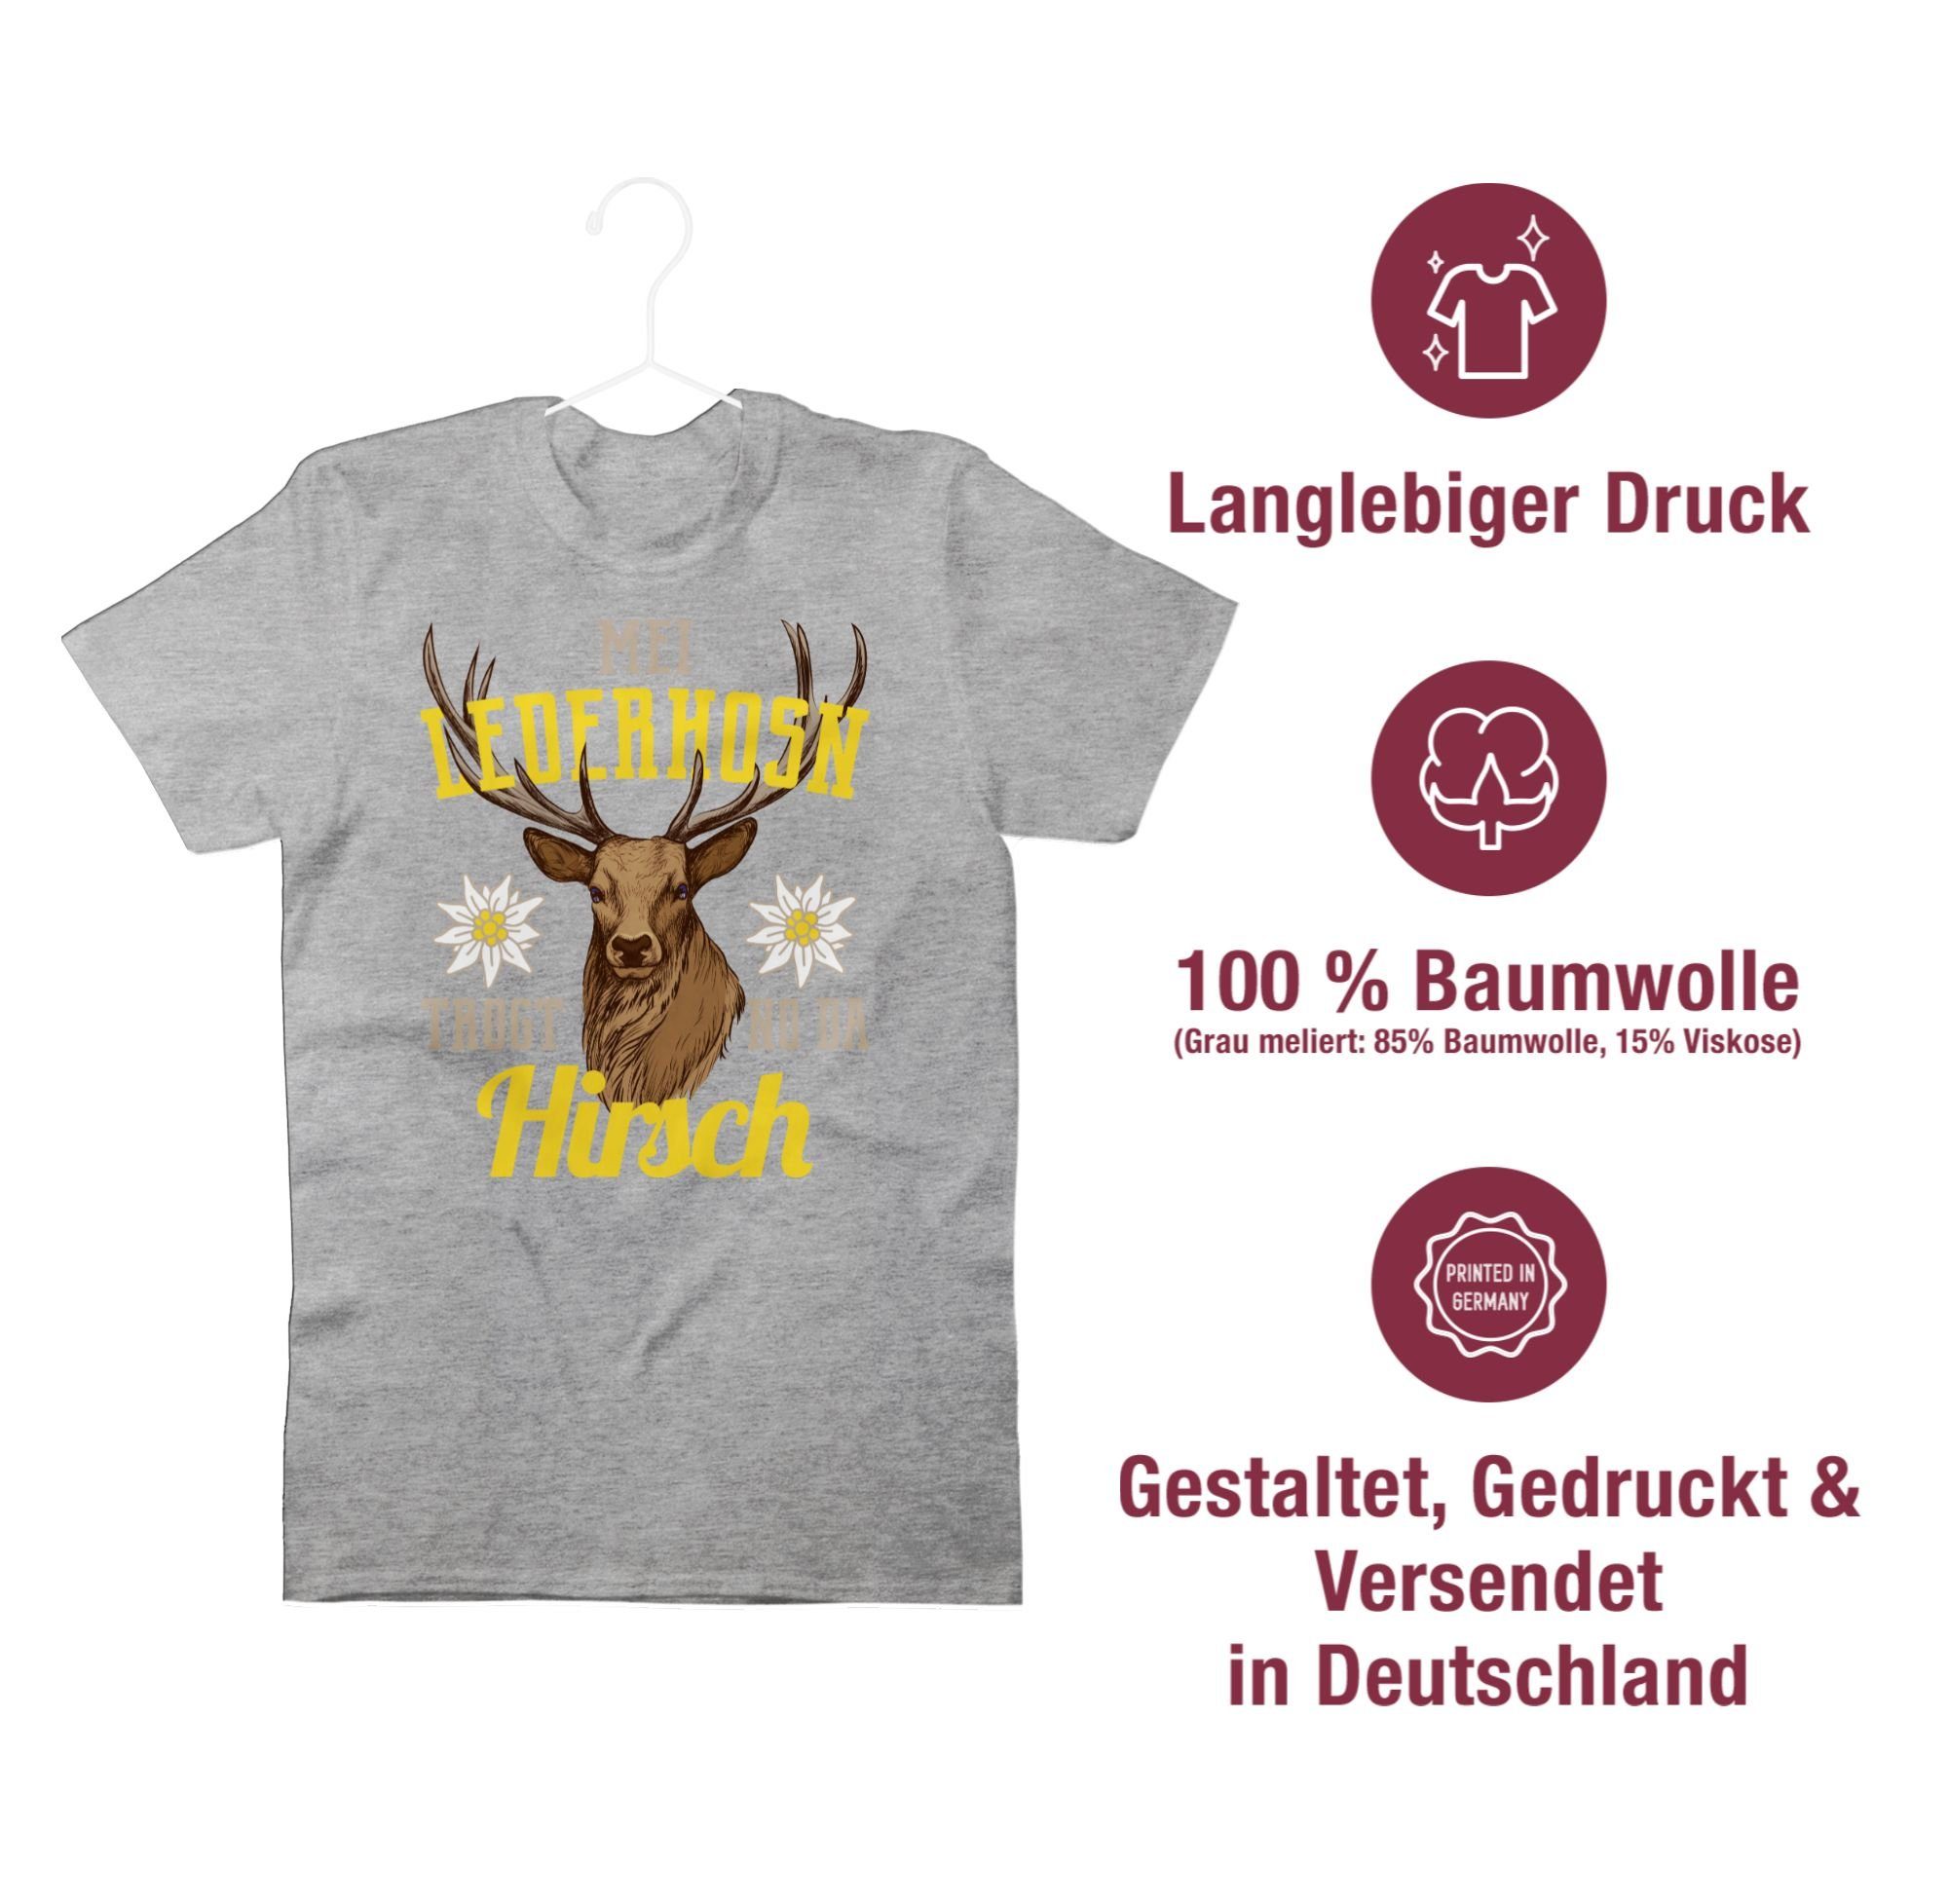 T-Shirt Grau Hirsch no gelb/braun da Oktoberfest Herren Mei meliert 3 trogt für Lederhosn Mode - Shirtracer